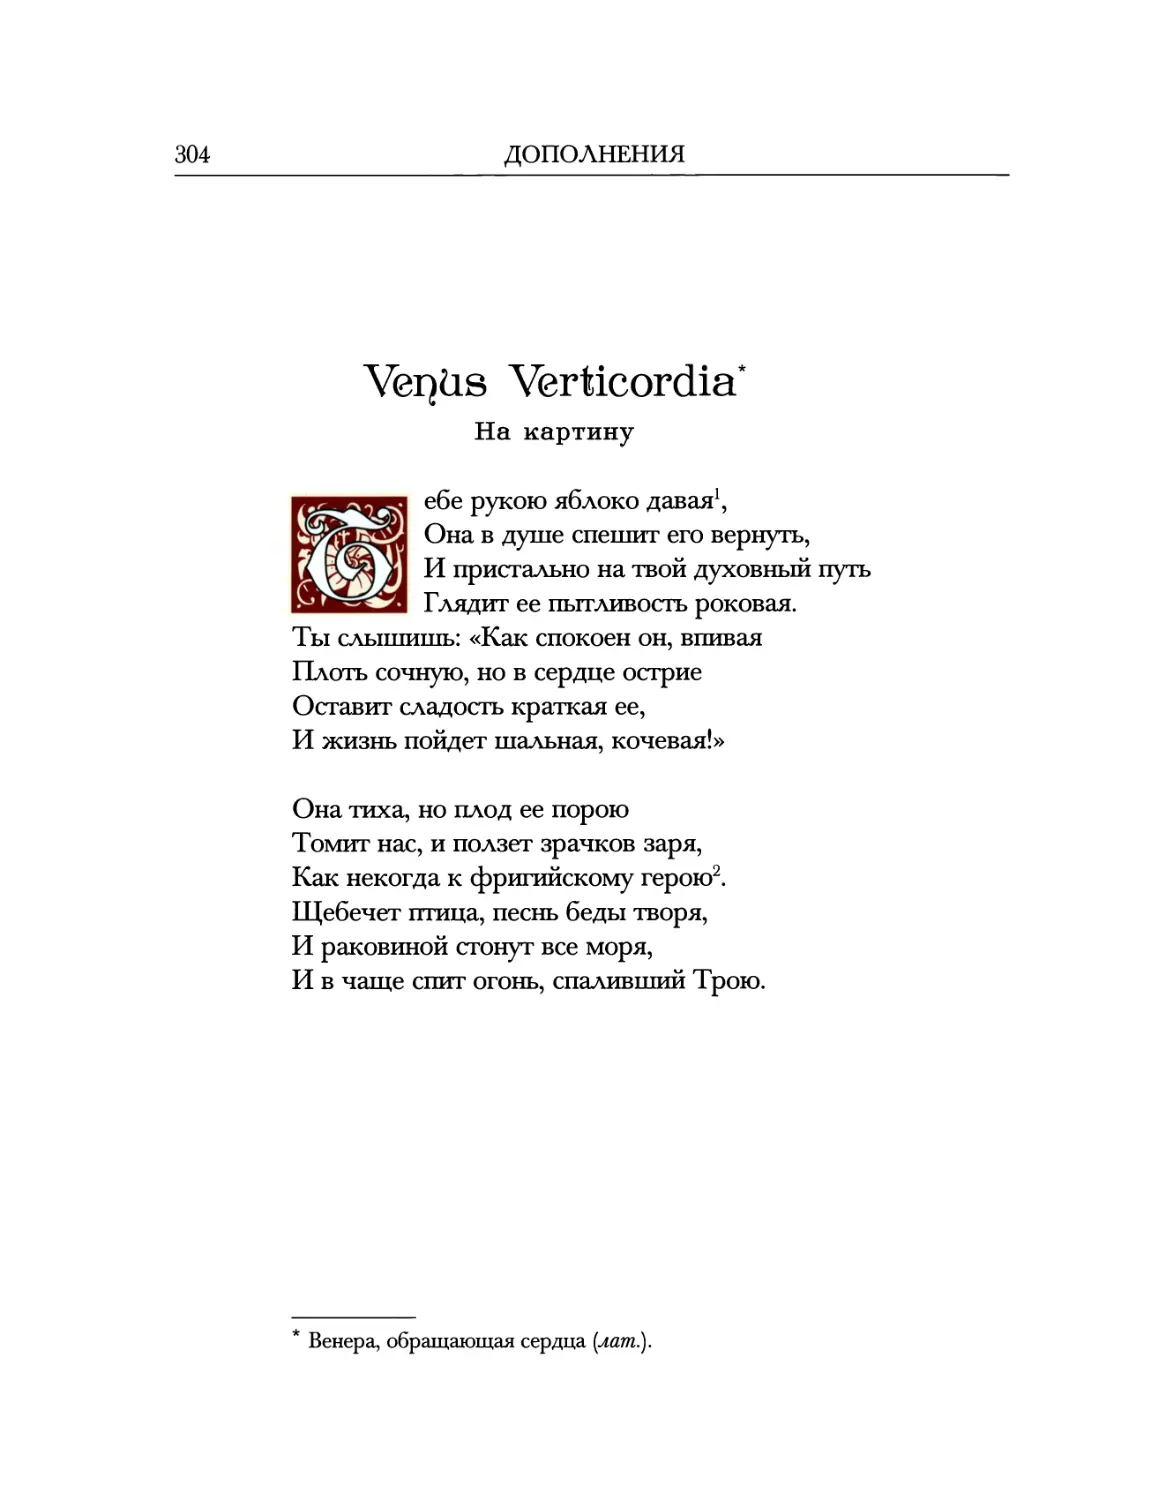 Venus Verticordia. На картину